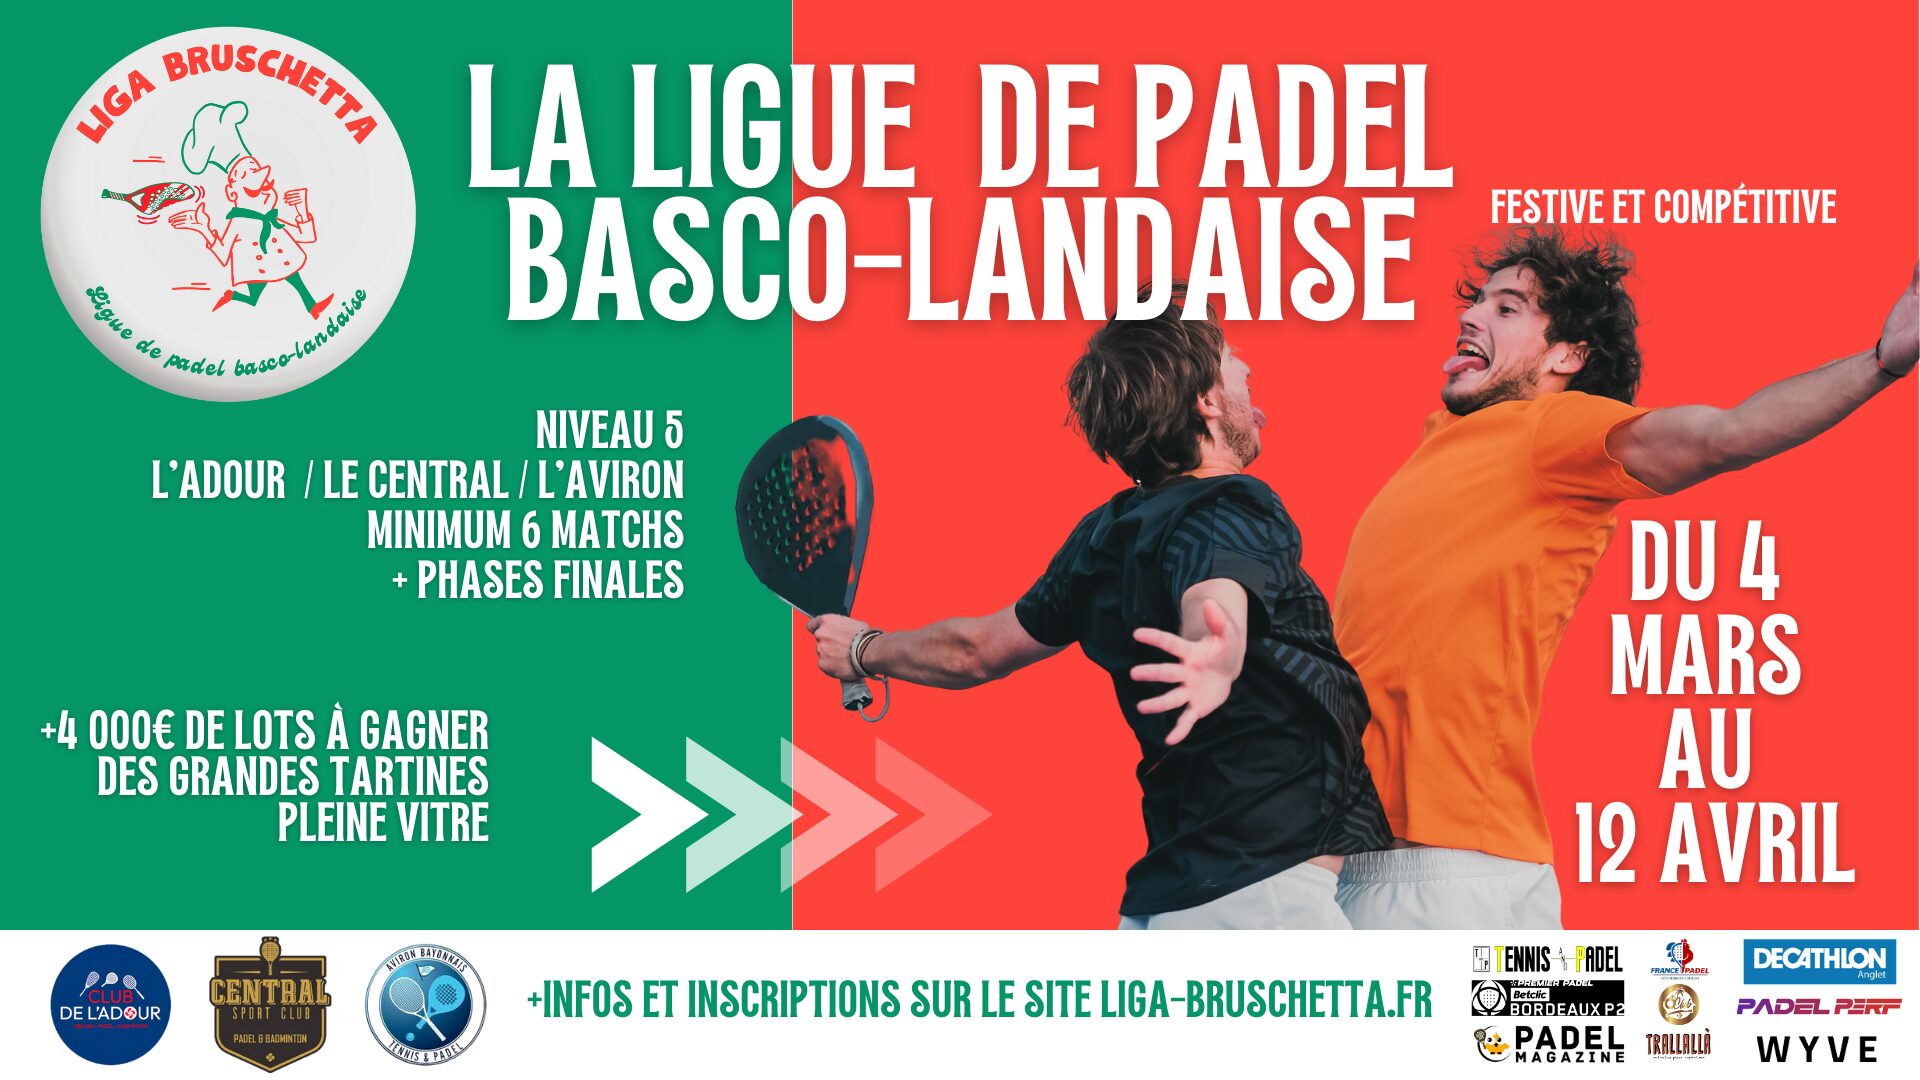 La Liga Bruschetta: ensimmäinen liiga padel baski-landia